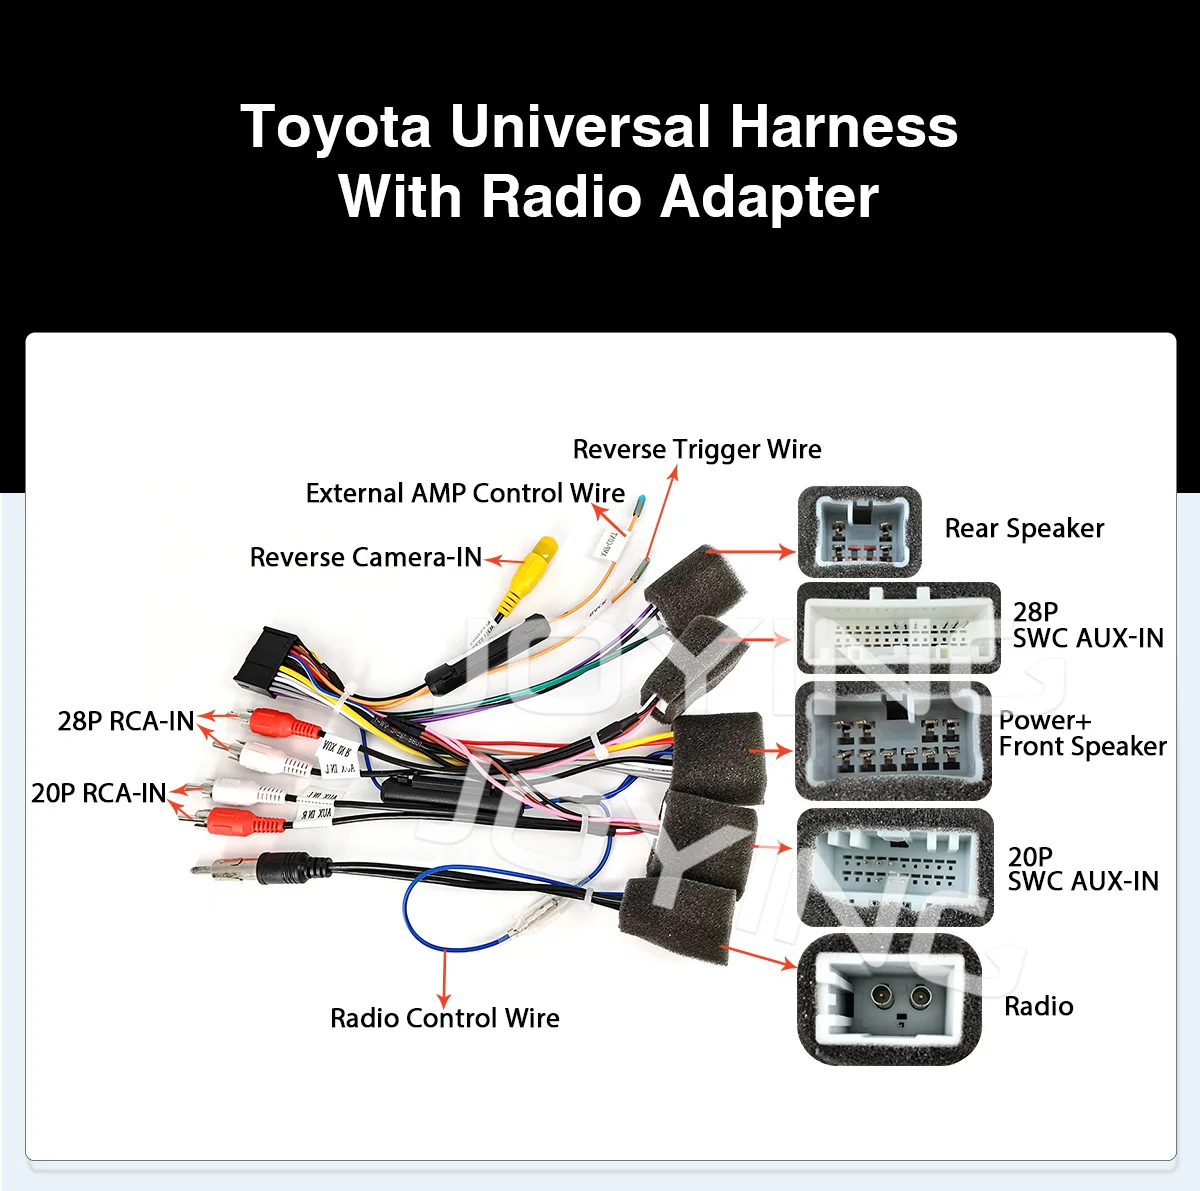 מיוחד רתמת חיווט עבור טויוטה רדיו במכונית מתאם חשמל כבל חשמל תקע הרדיו